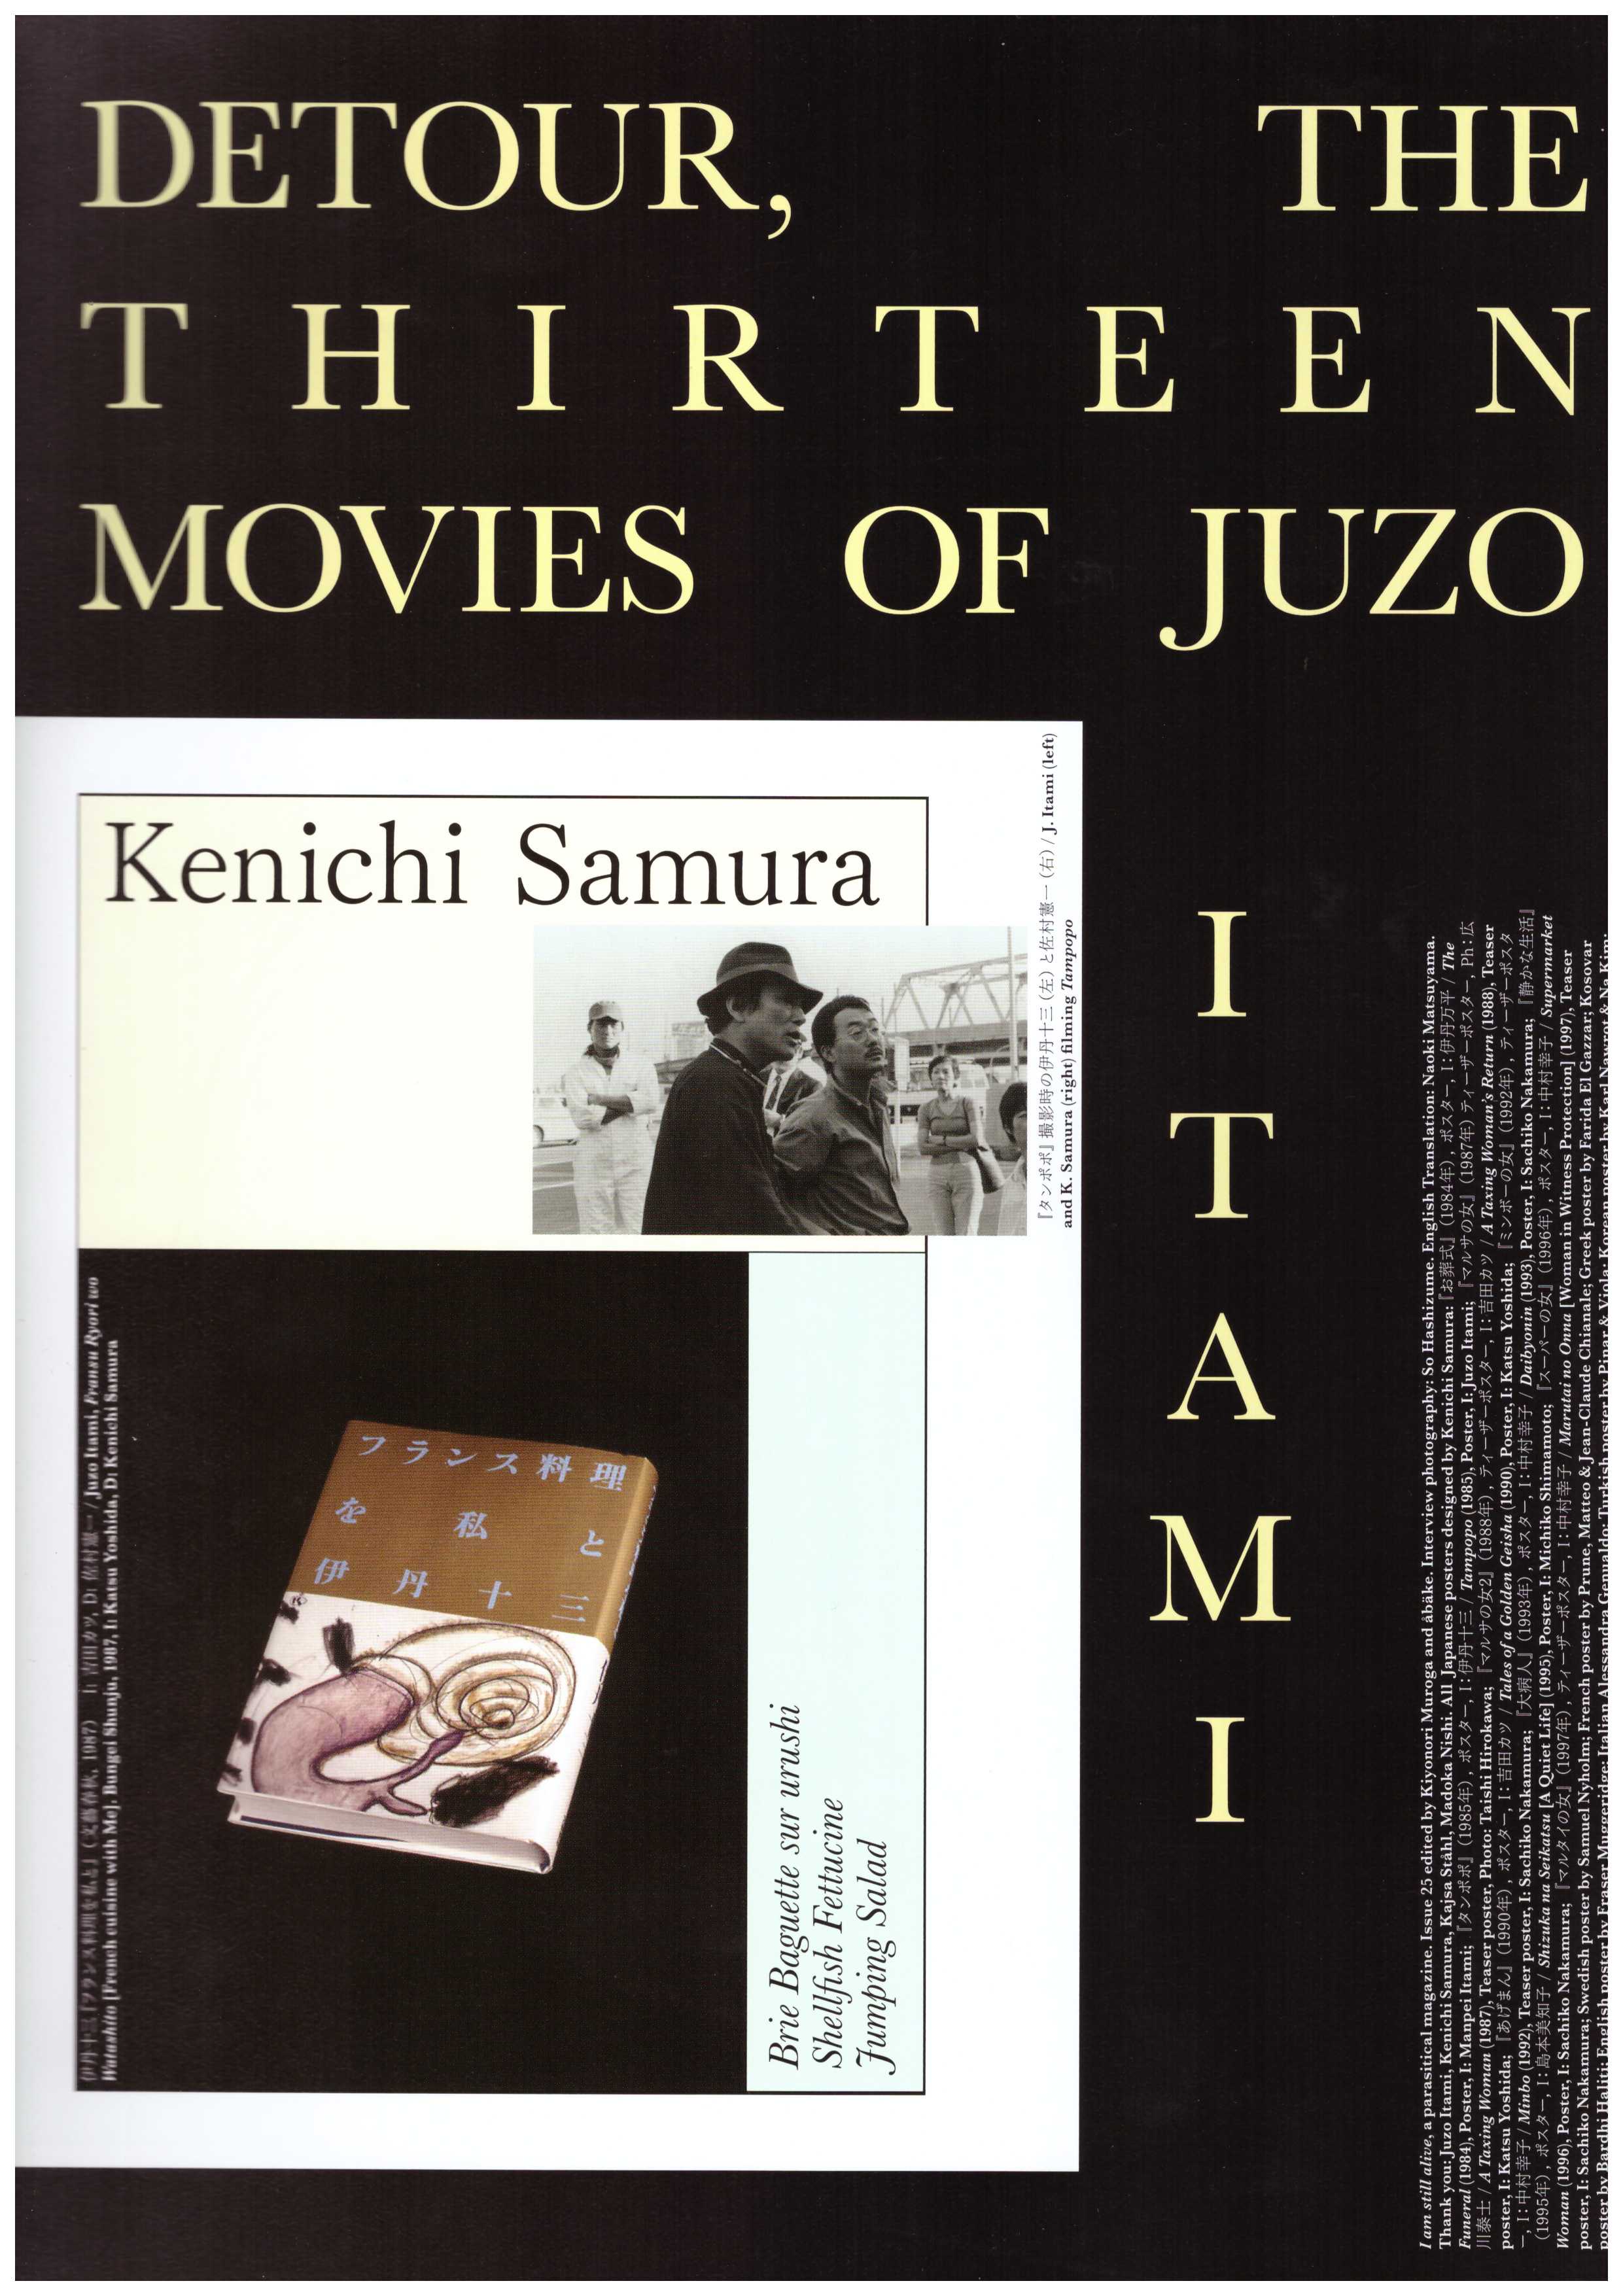 ÅBÄKE; MUROGA, Kiyonori (eds.) - Detour, the thirteen movies of Juzo Itam